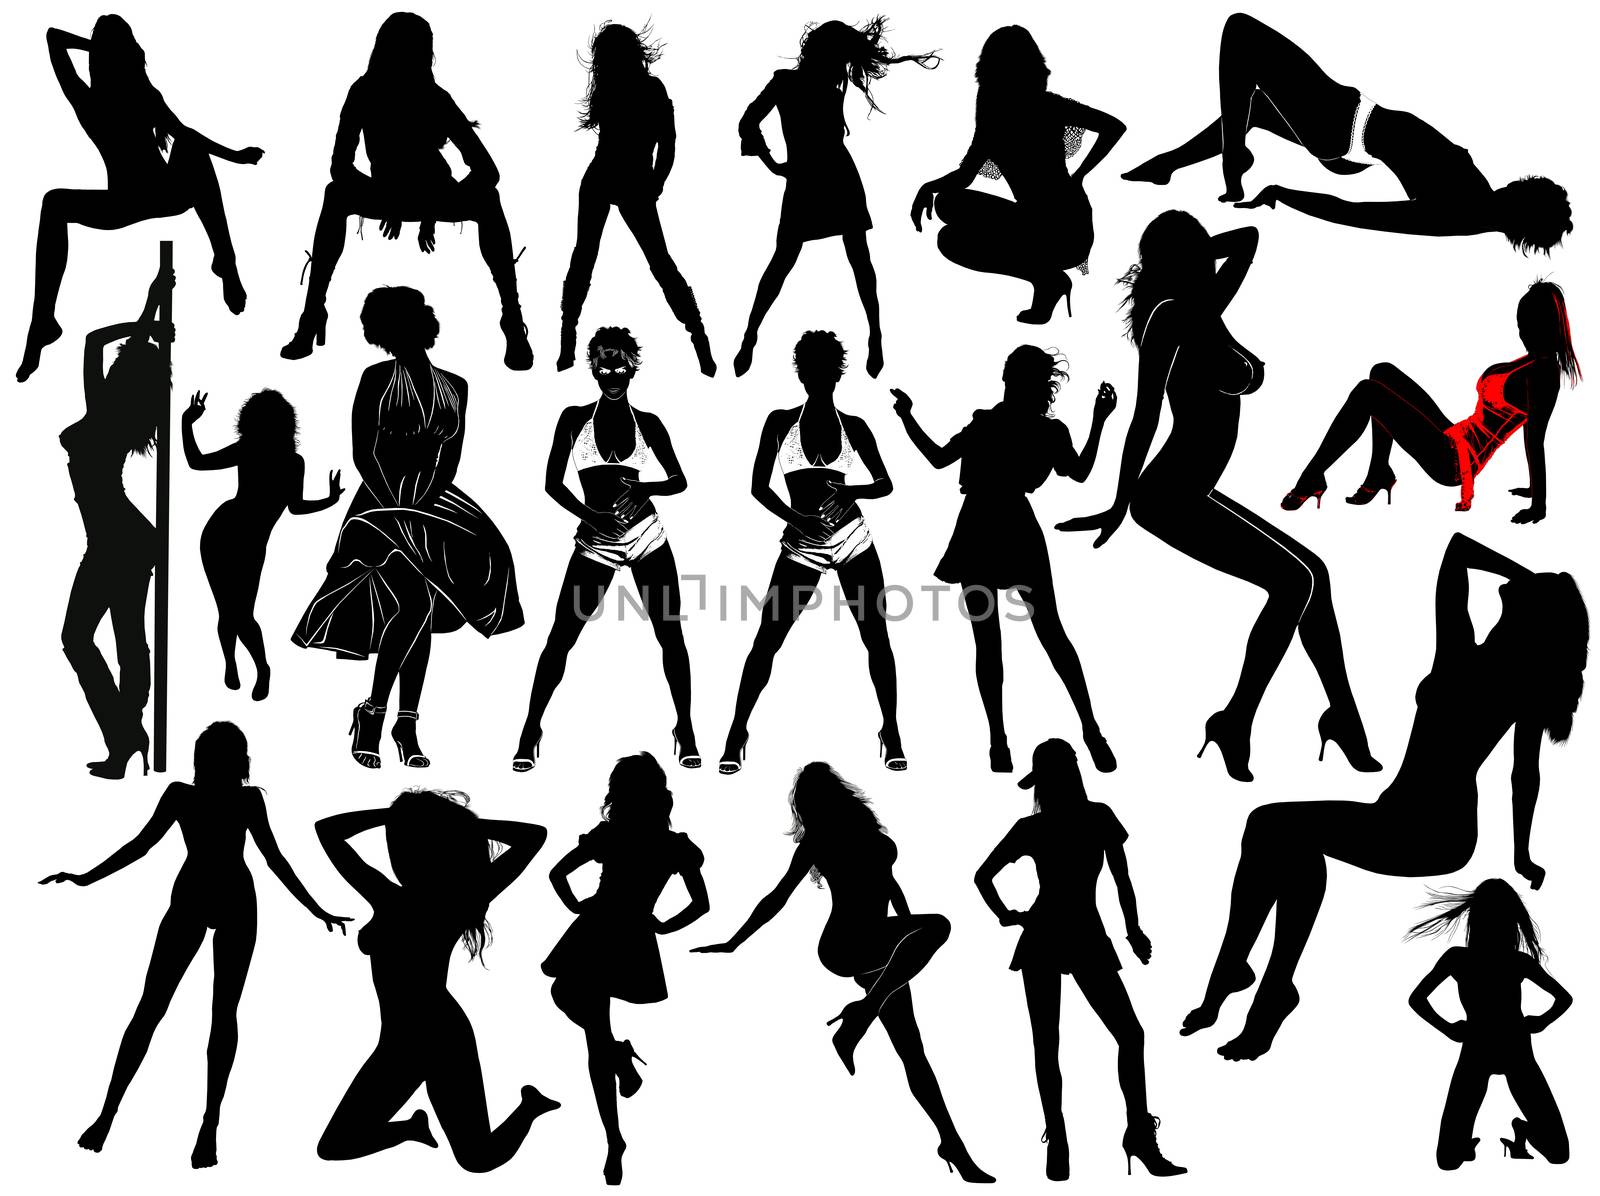 twenty one women silhouettes by Venakr